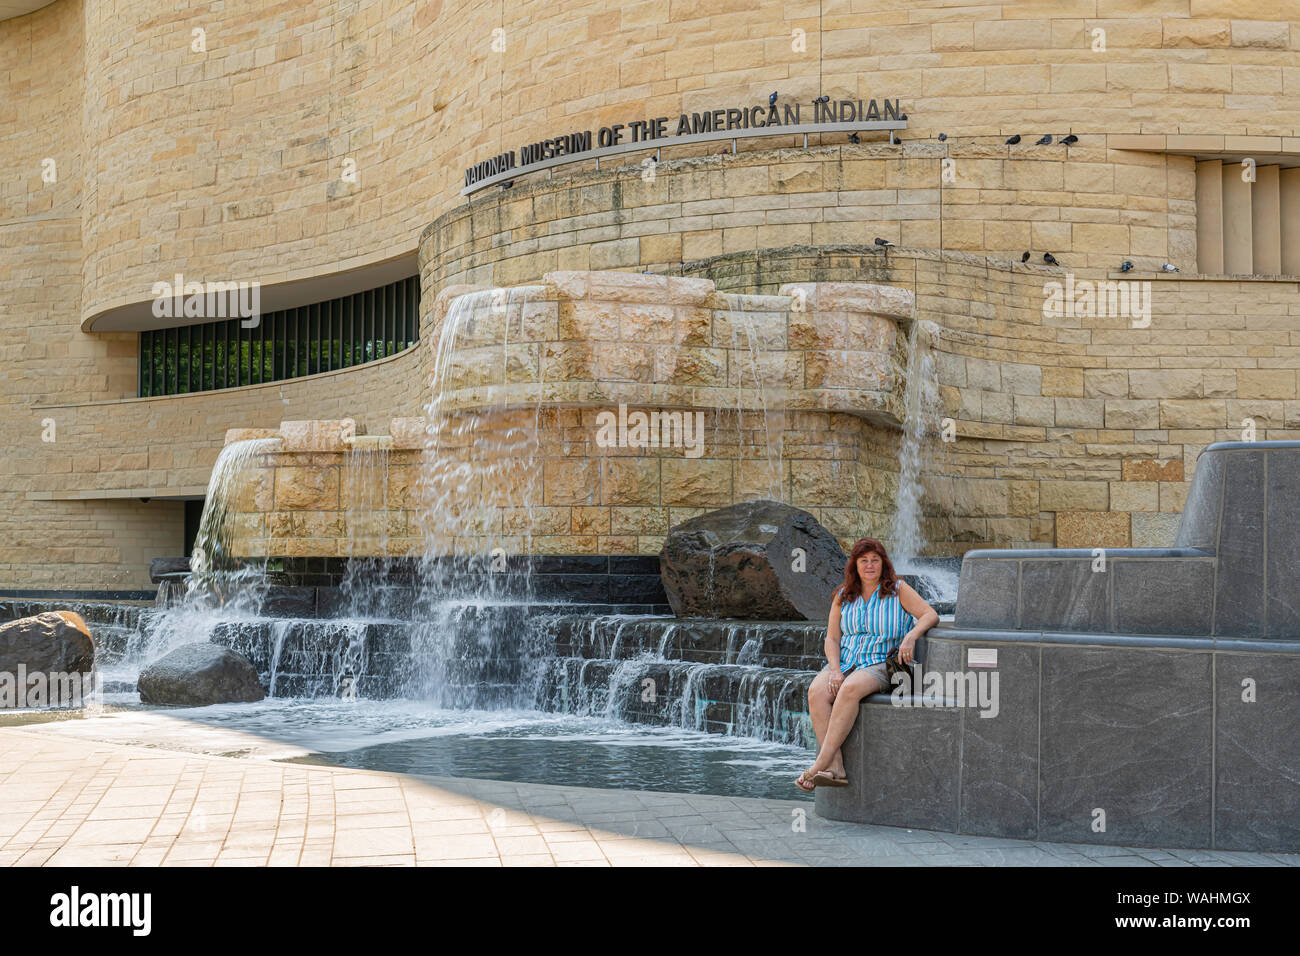 Washington DC, USA. 29.07.2019. Frau sitzt in der Nähe von Wasserfall am nationalen Museum der amerikanischen Indianer. Stockfoto